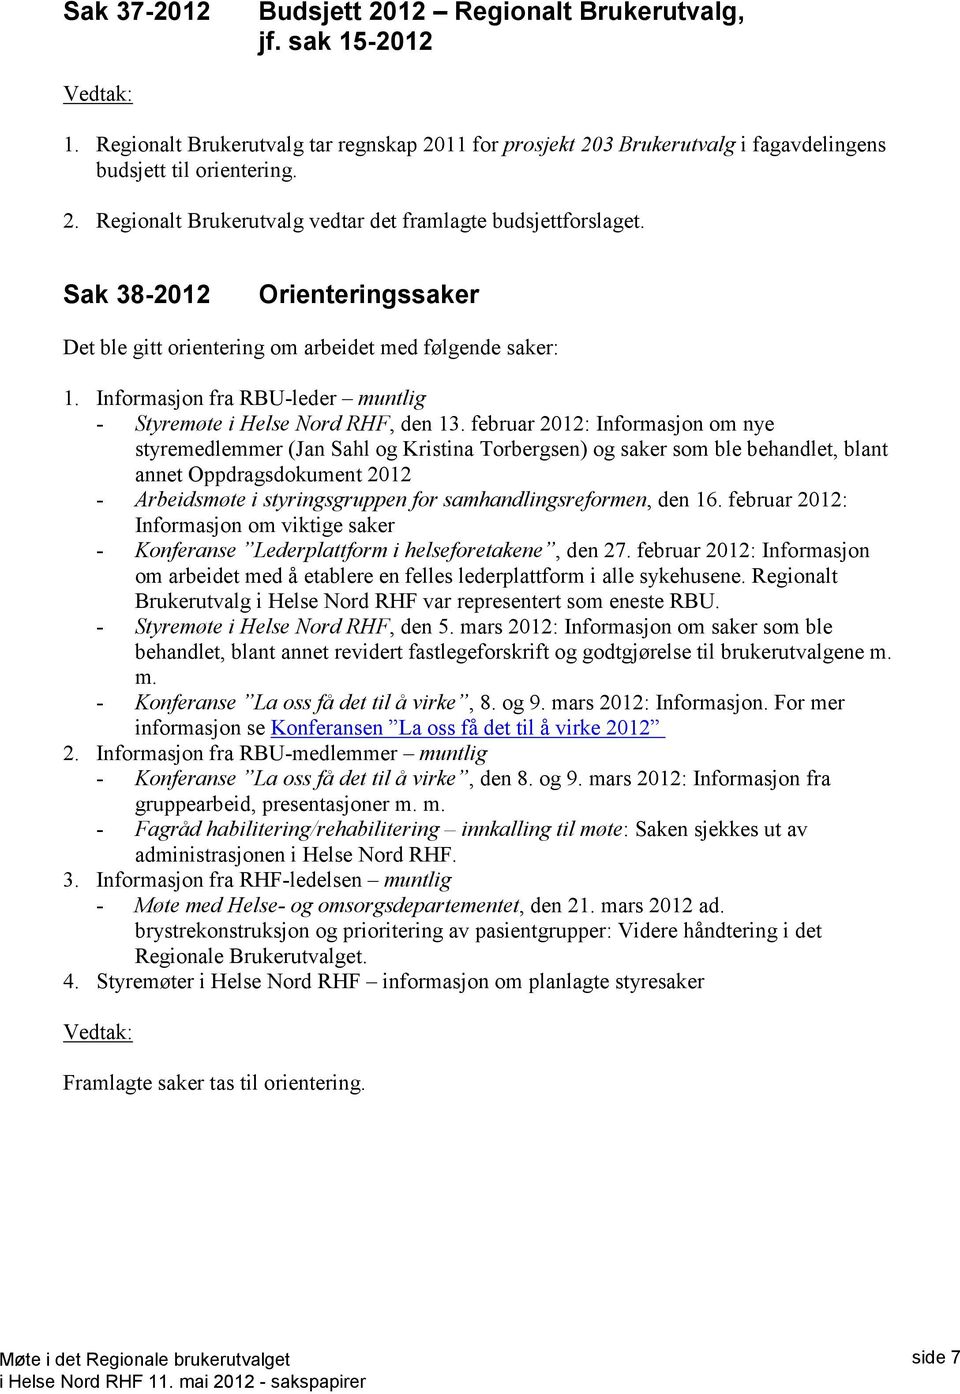 februar 2012: Informasjon om nye styremedlemmer (Jan Sahl og Kristina Torbergsen) og saker som ble behandlet, blant annet Oppdragsdokument 2012 - Arbeidsmøte i styringsgruppen for